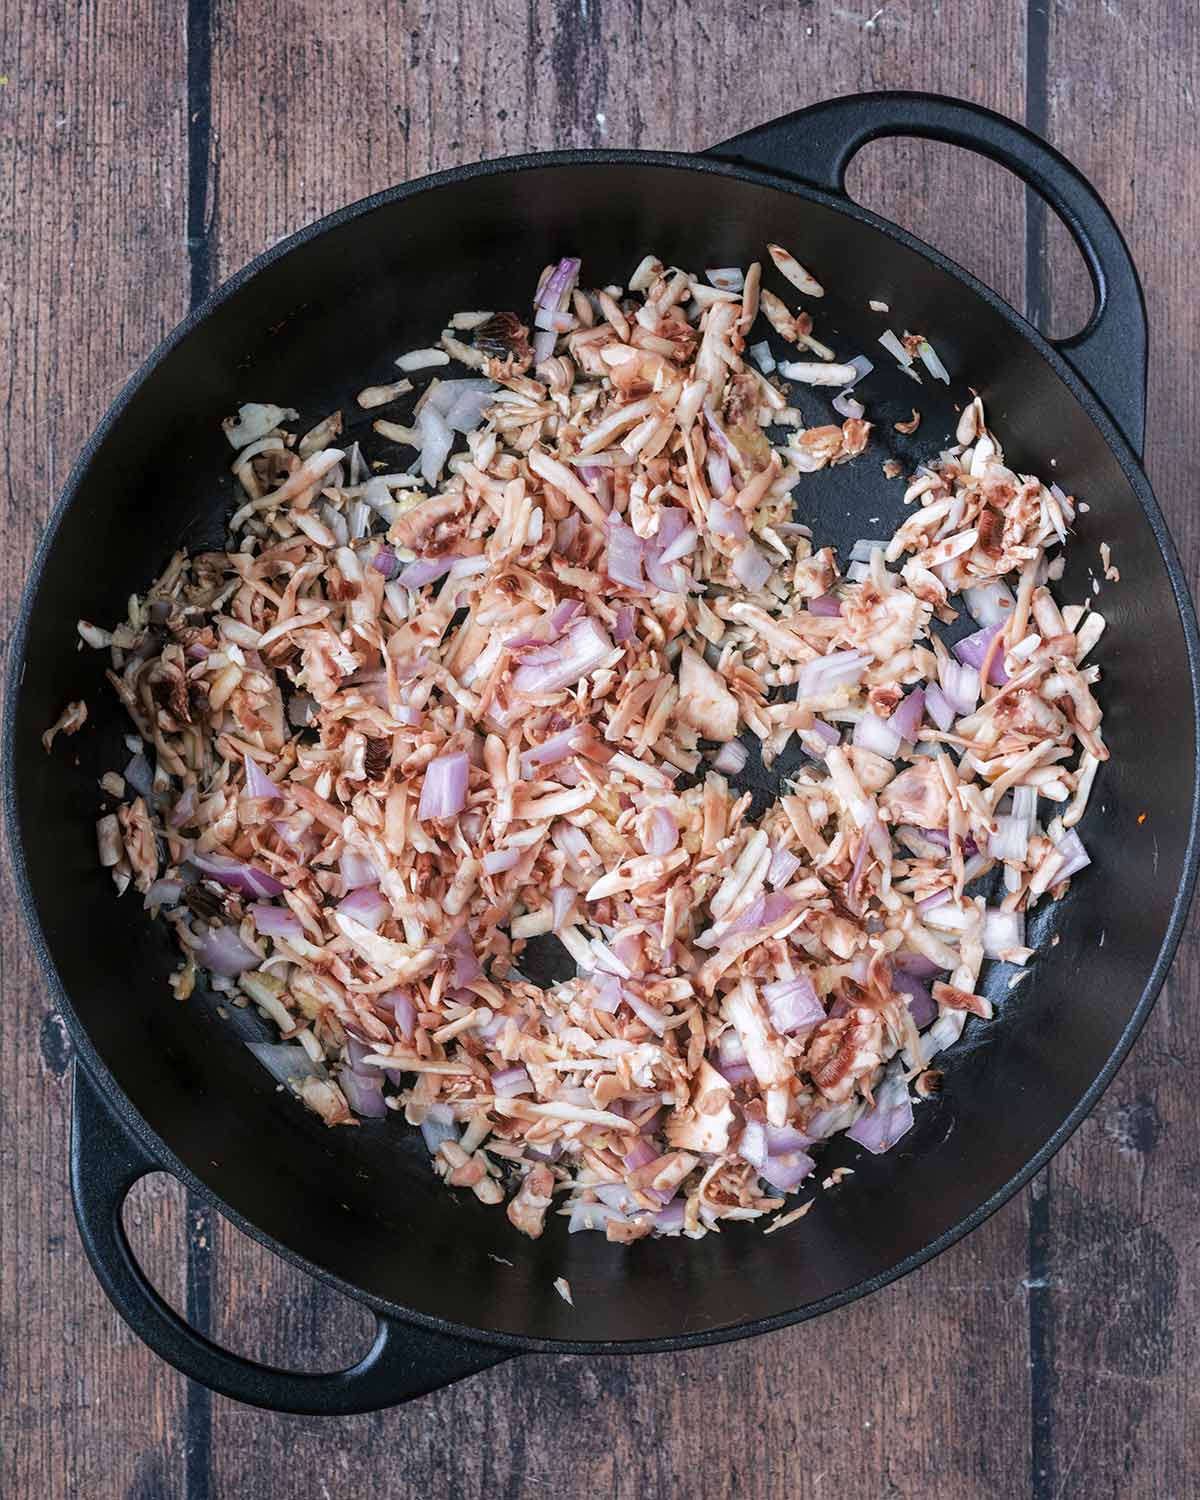 Shallots, mushrooms and garlic cooking in a pan.